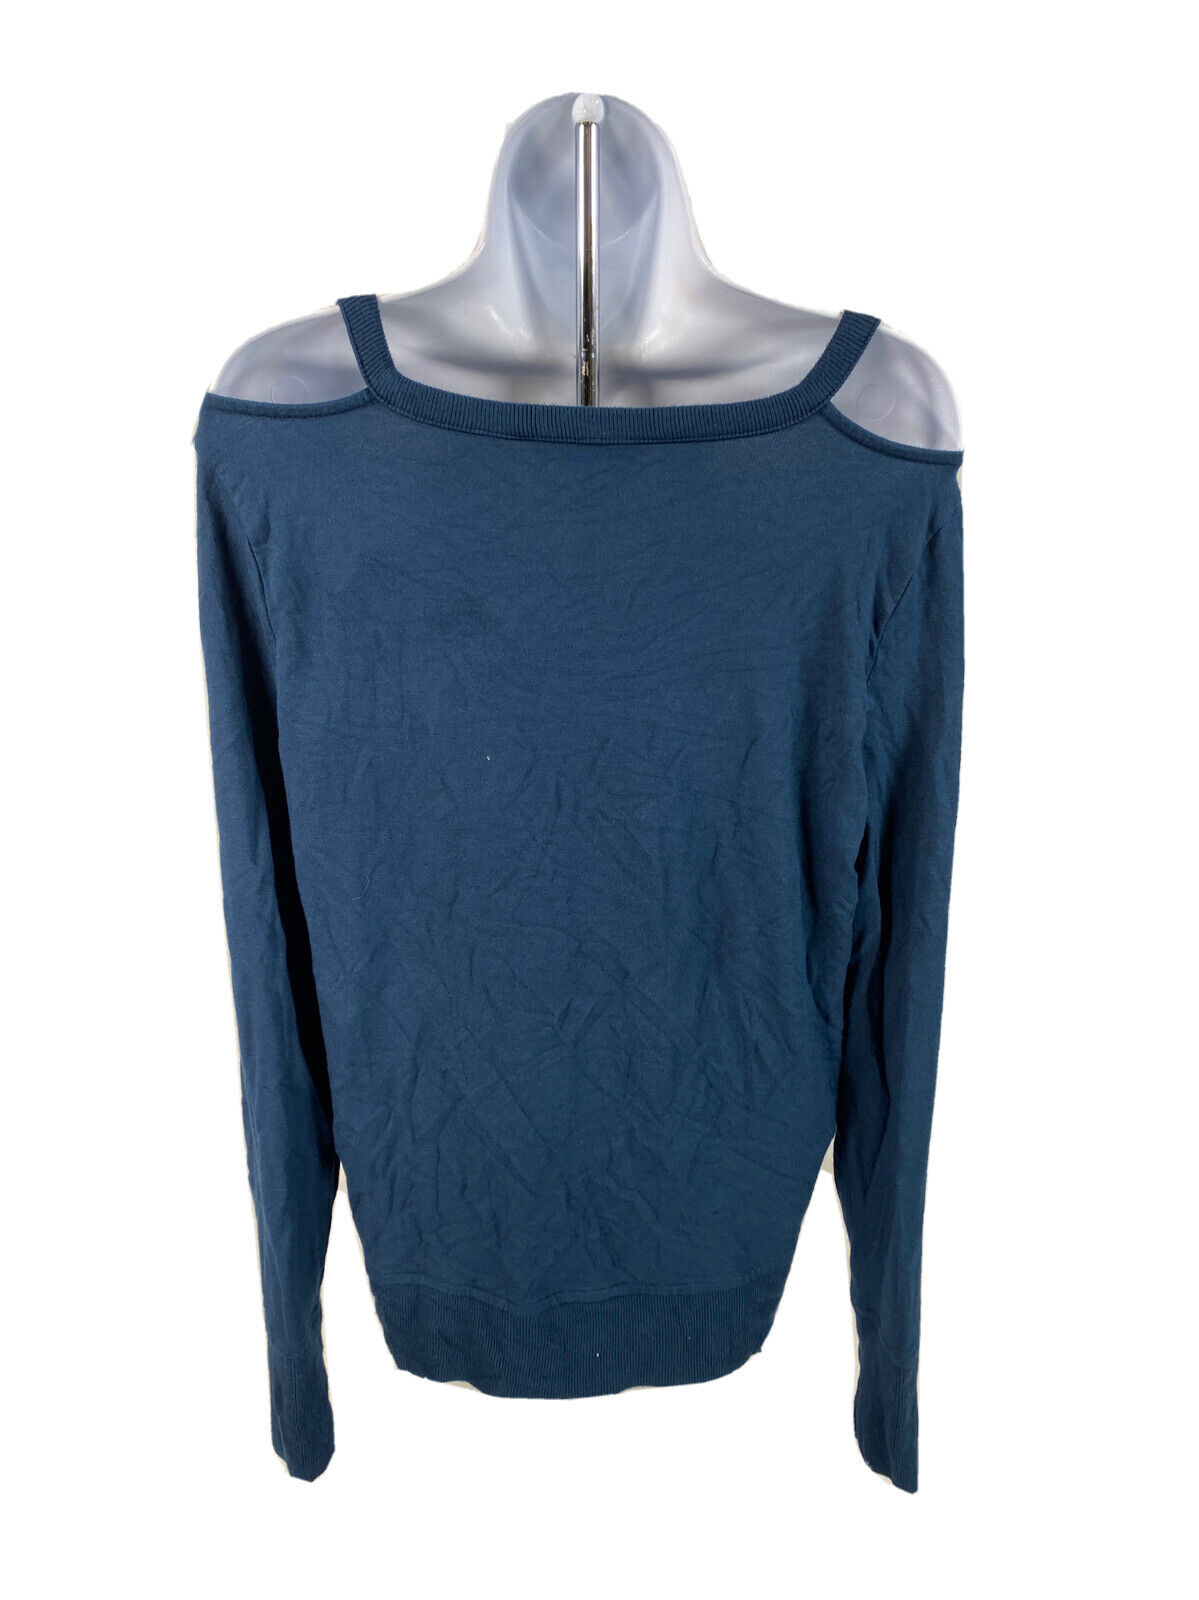 Athleta Camisa de punto de rizo de manga larga azul con hombros descubiertos para mujer - S